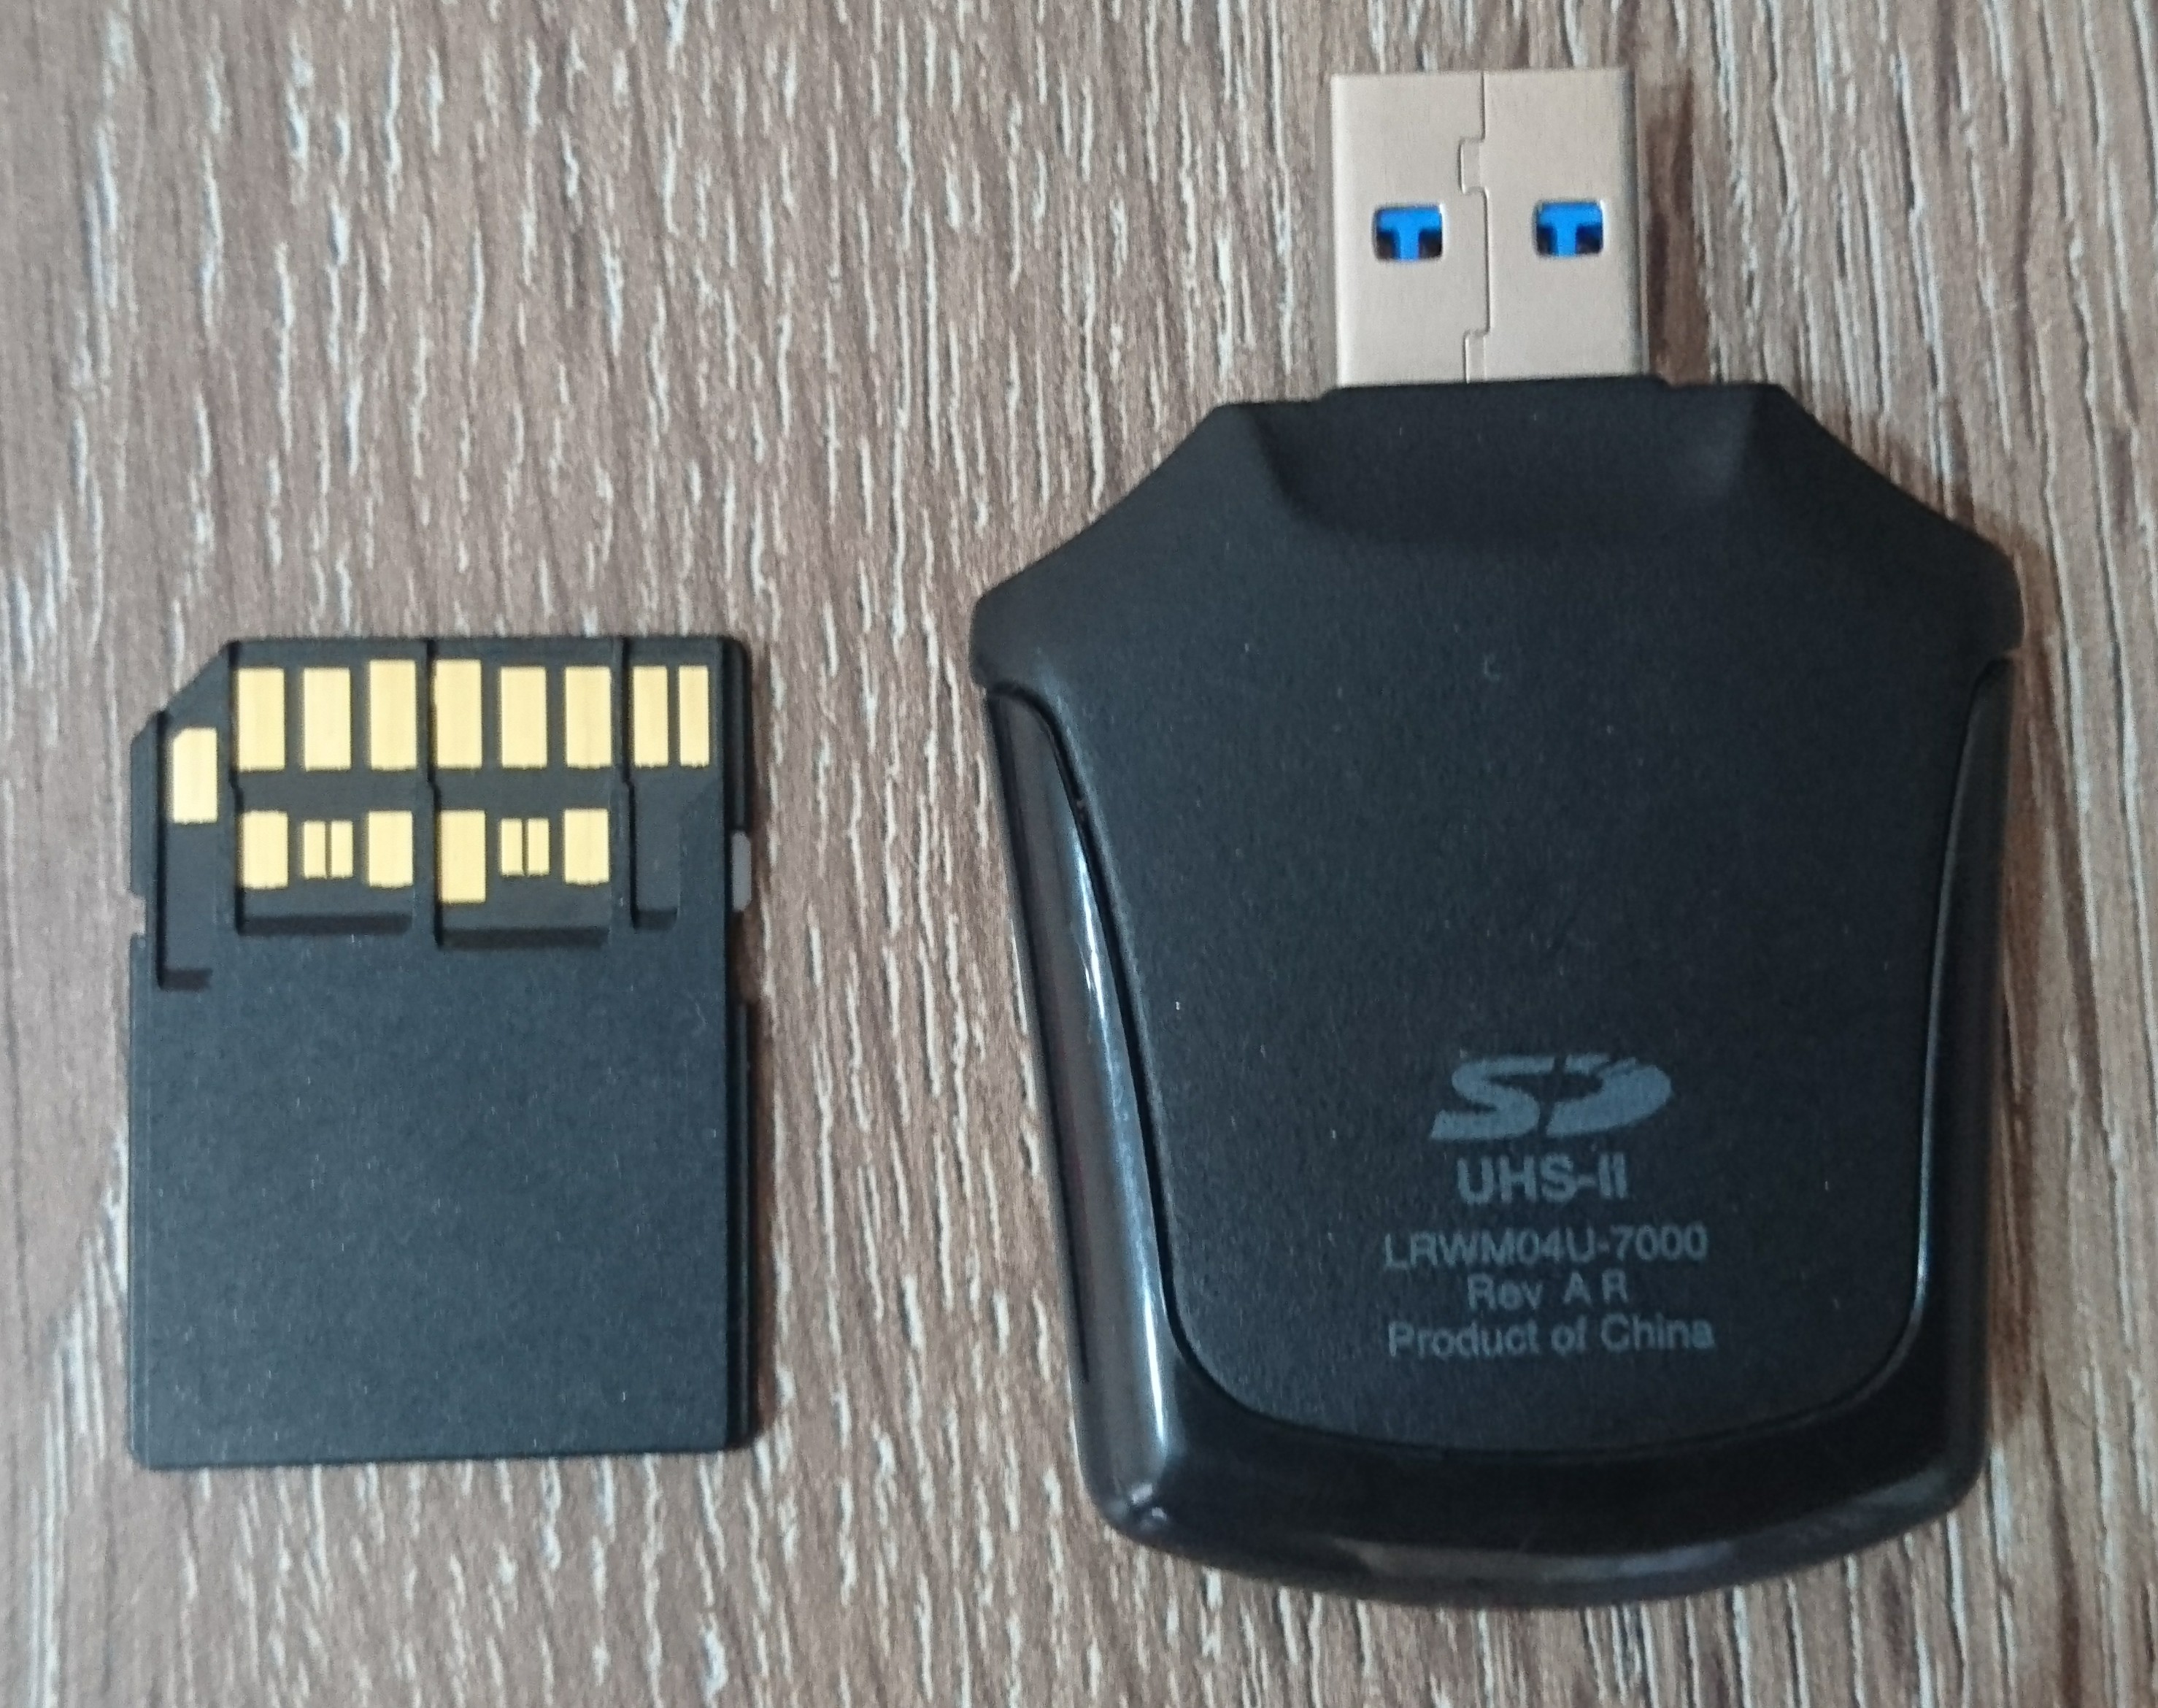 SATILIK LEXAR 2000X 64 GB 300 MB OKUMA HIZI PROFESYONEL SD KART